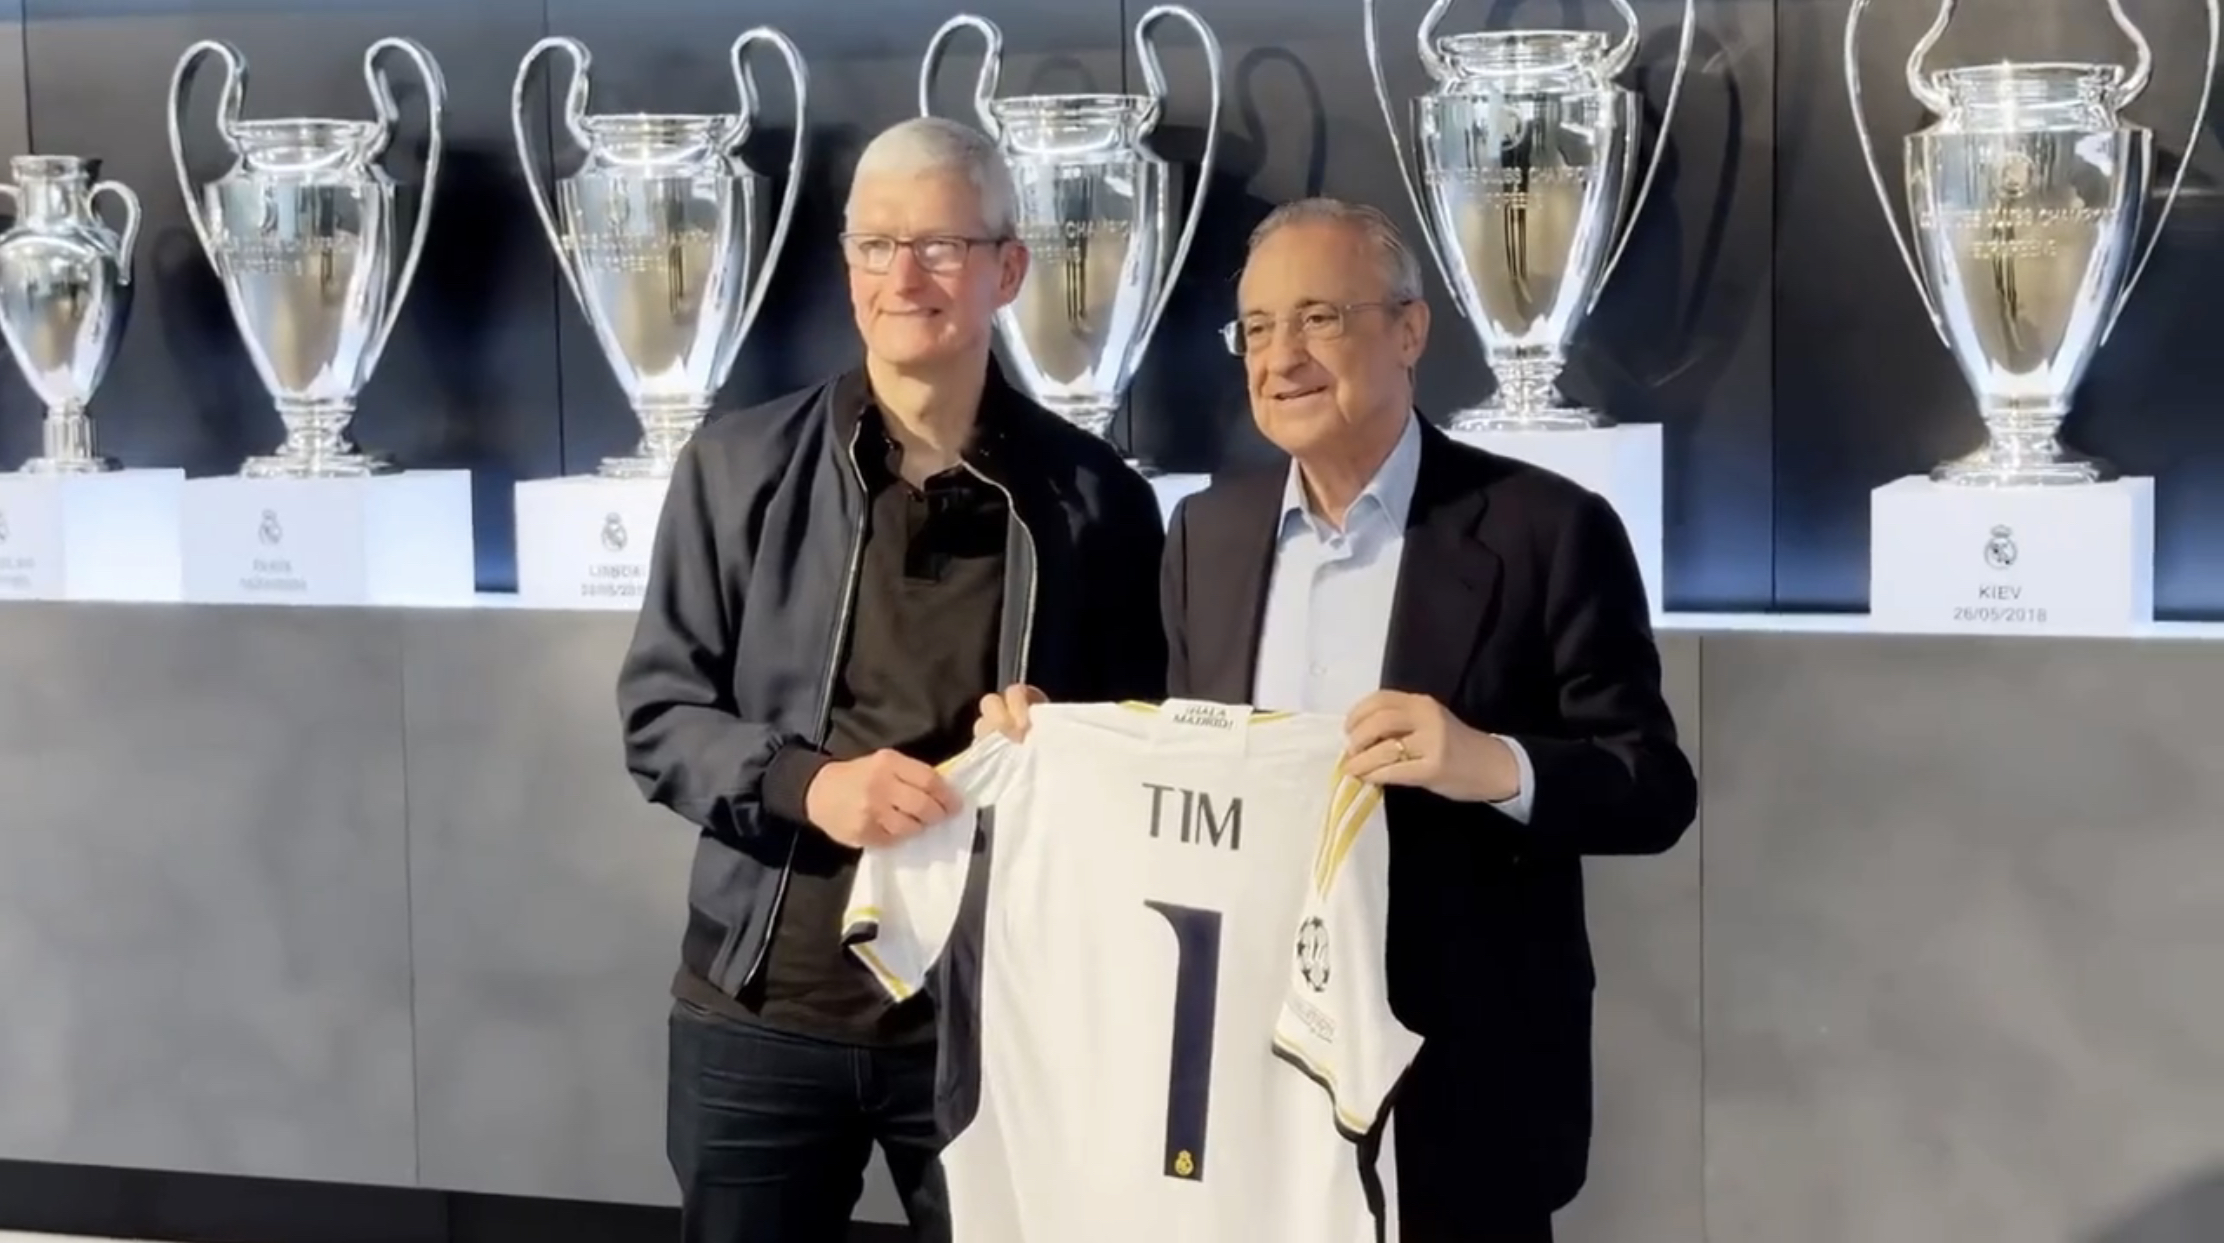 «Какая честь провести время с легендарной командой ФК «Реал Мадрид» и игроками её молодежной команды. Спасибо за теплый приём в Испании!», – Тим Кук